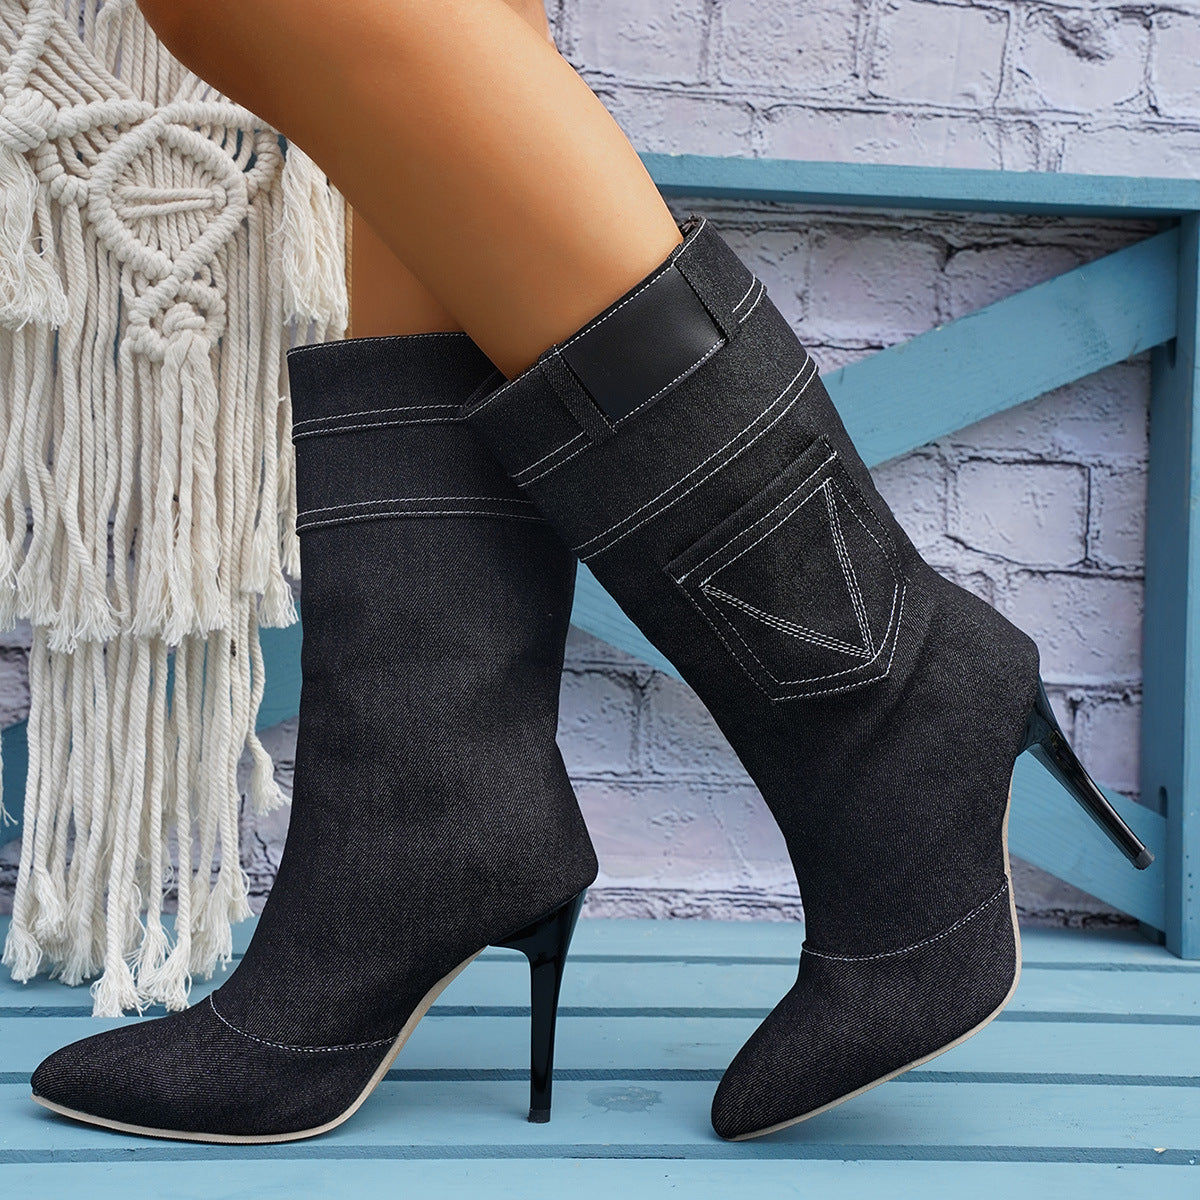 Black Pocket Design Fashion Women's Denim Stiletto Boots - 2 colors - women's boot at TFC&H Co.